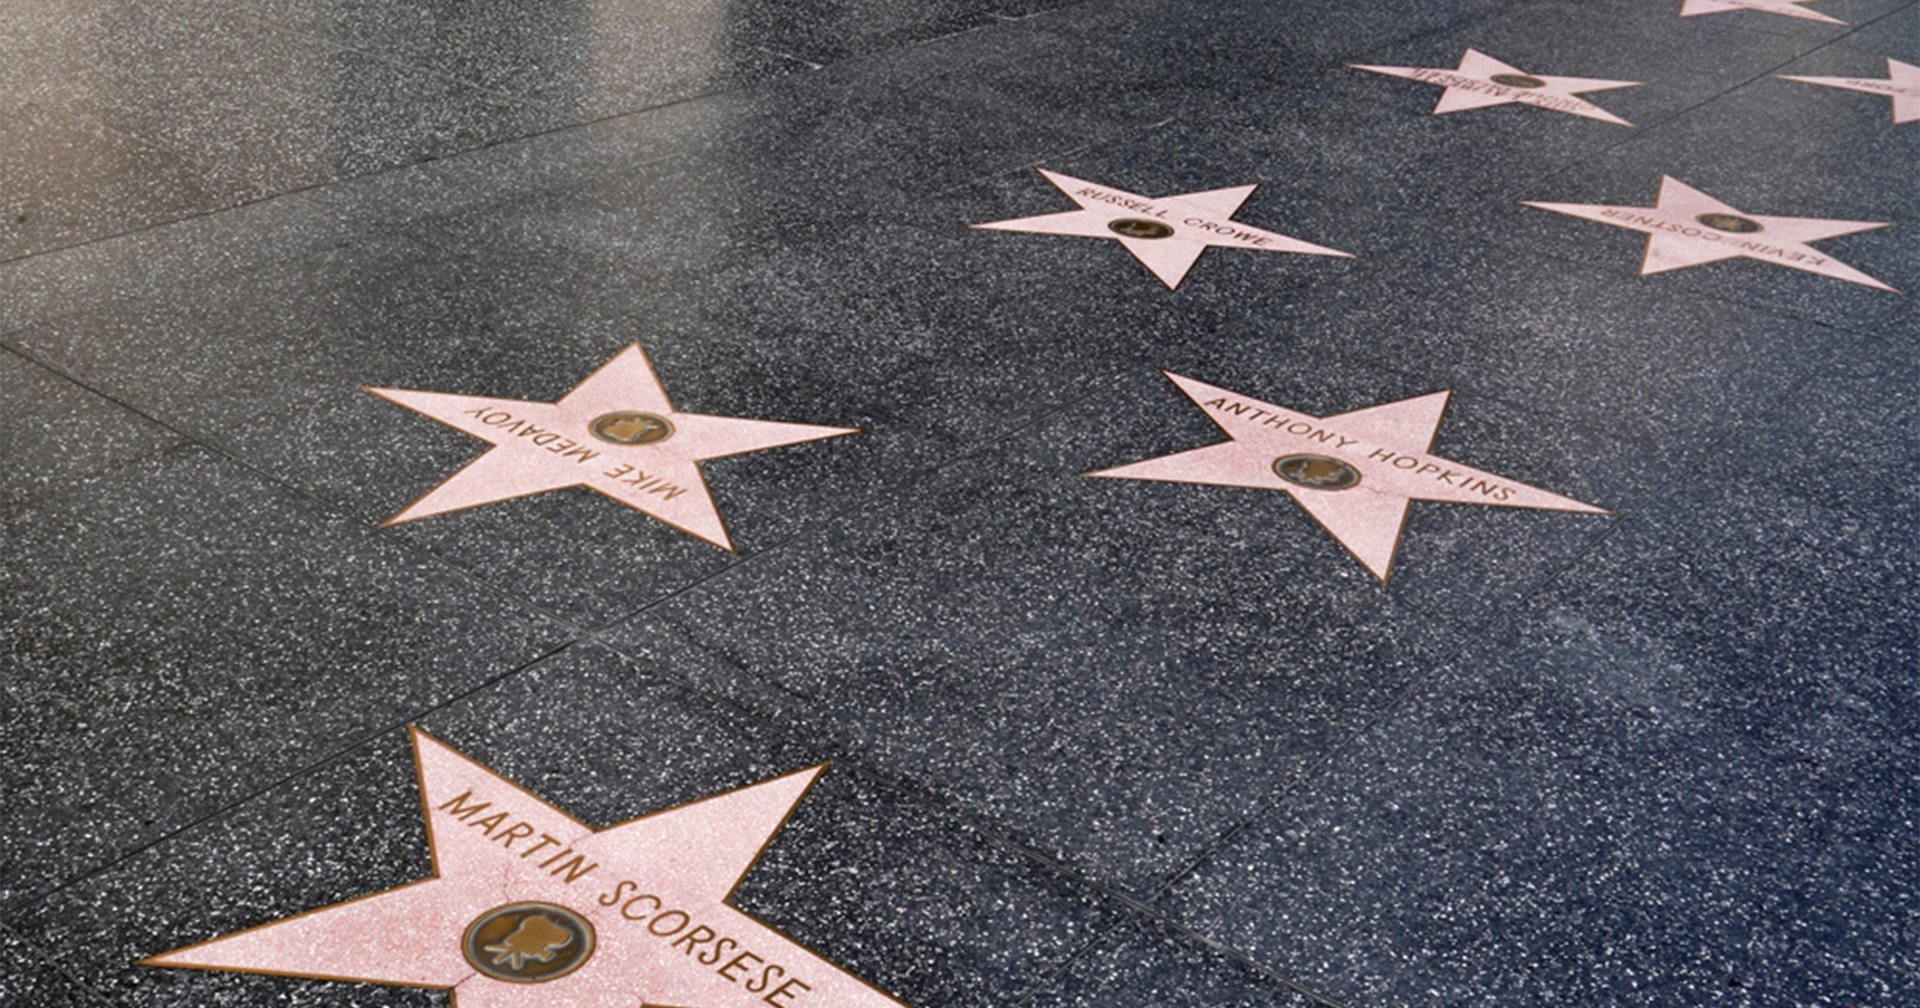 มาทำความรู้จักเส้นทางแห่งดวงดาวอย่าง “Hollywood Walk of Fame”